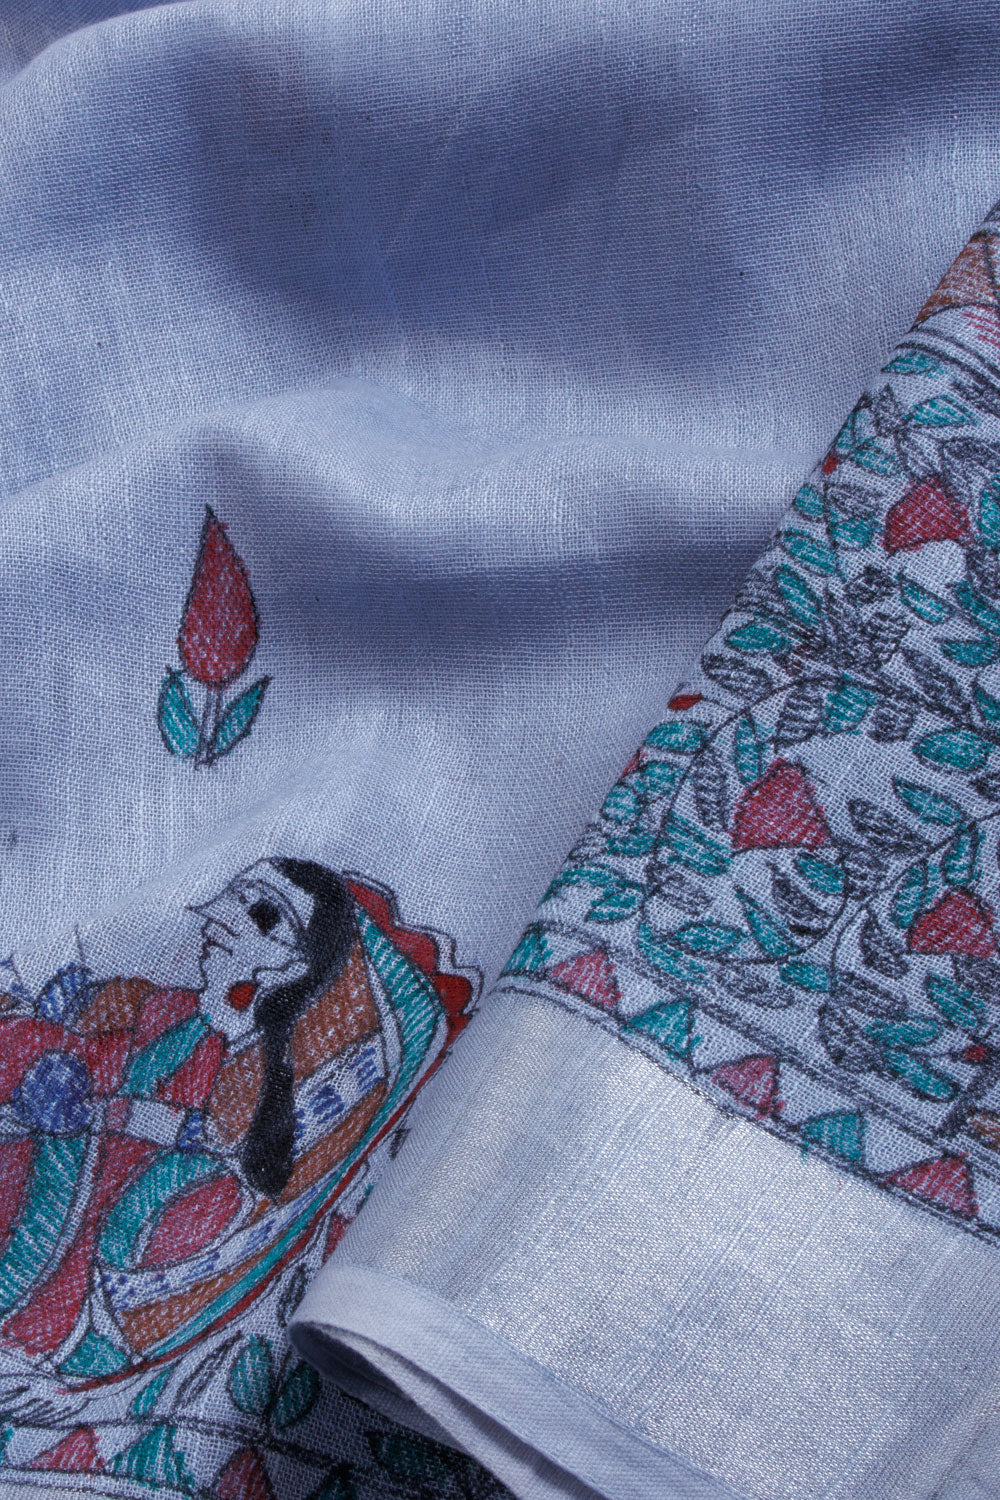 Blue Hand Printed Madhubani Linen Saree - Avishya